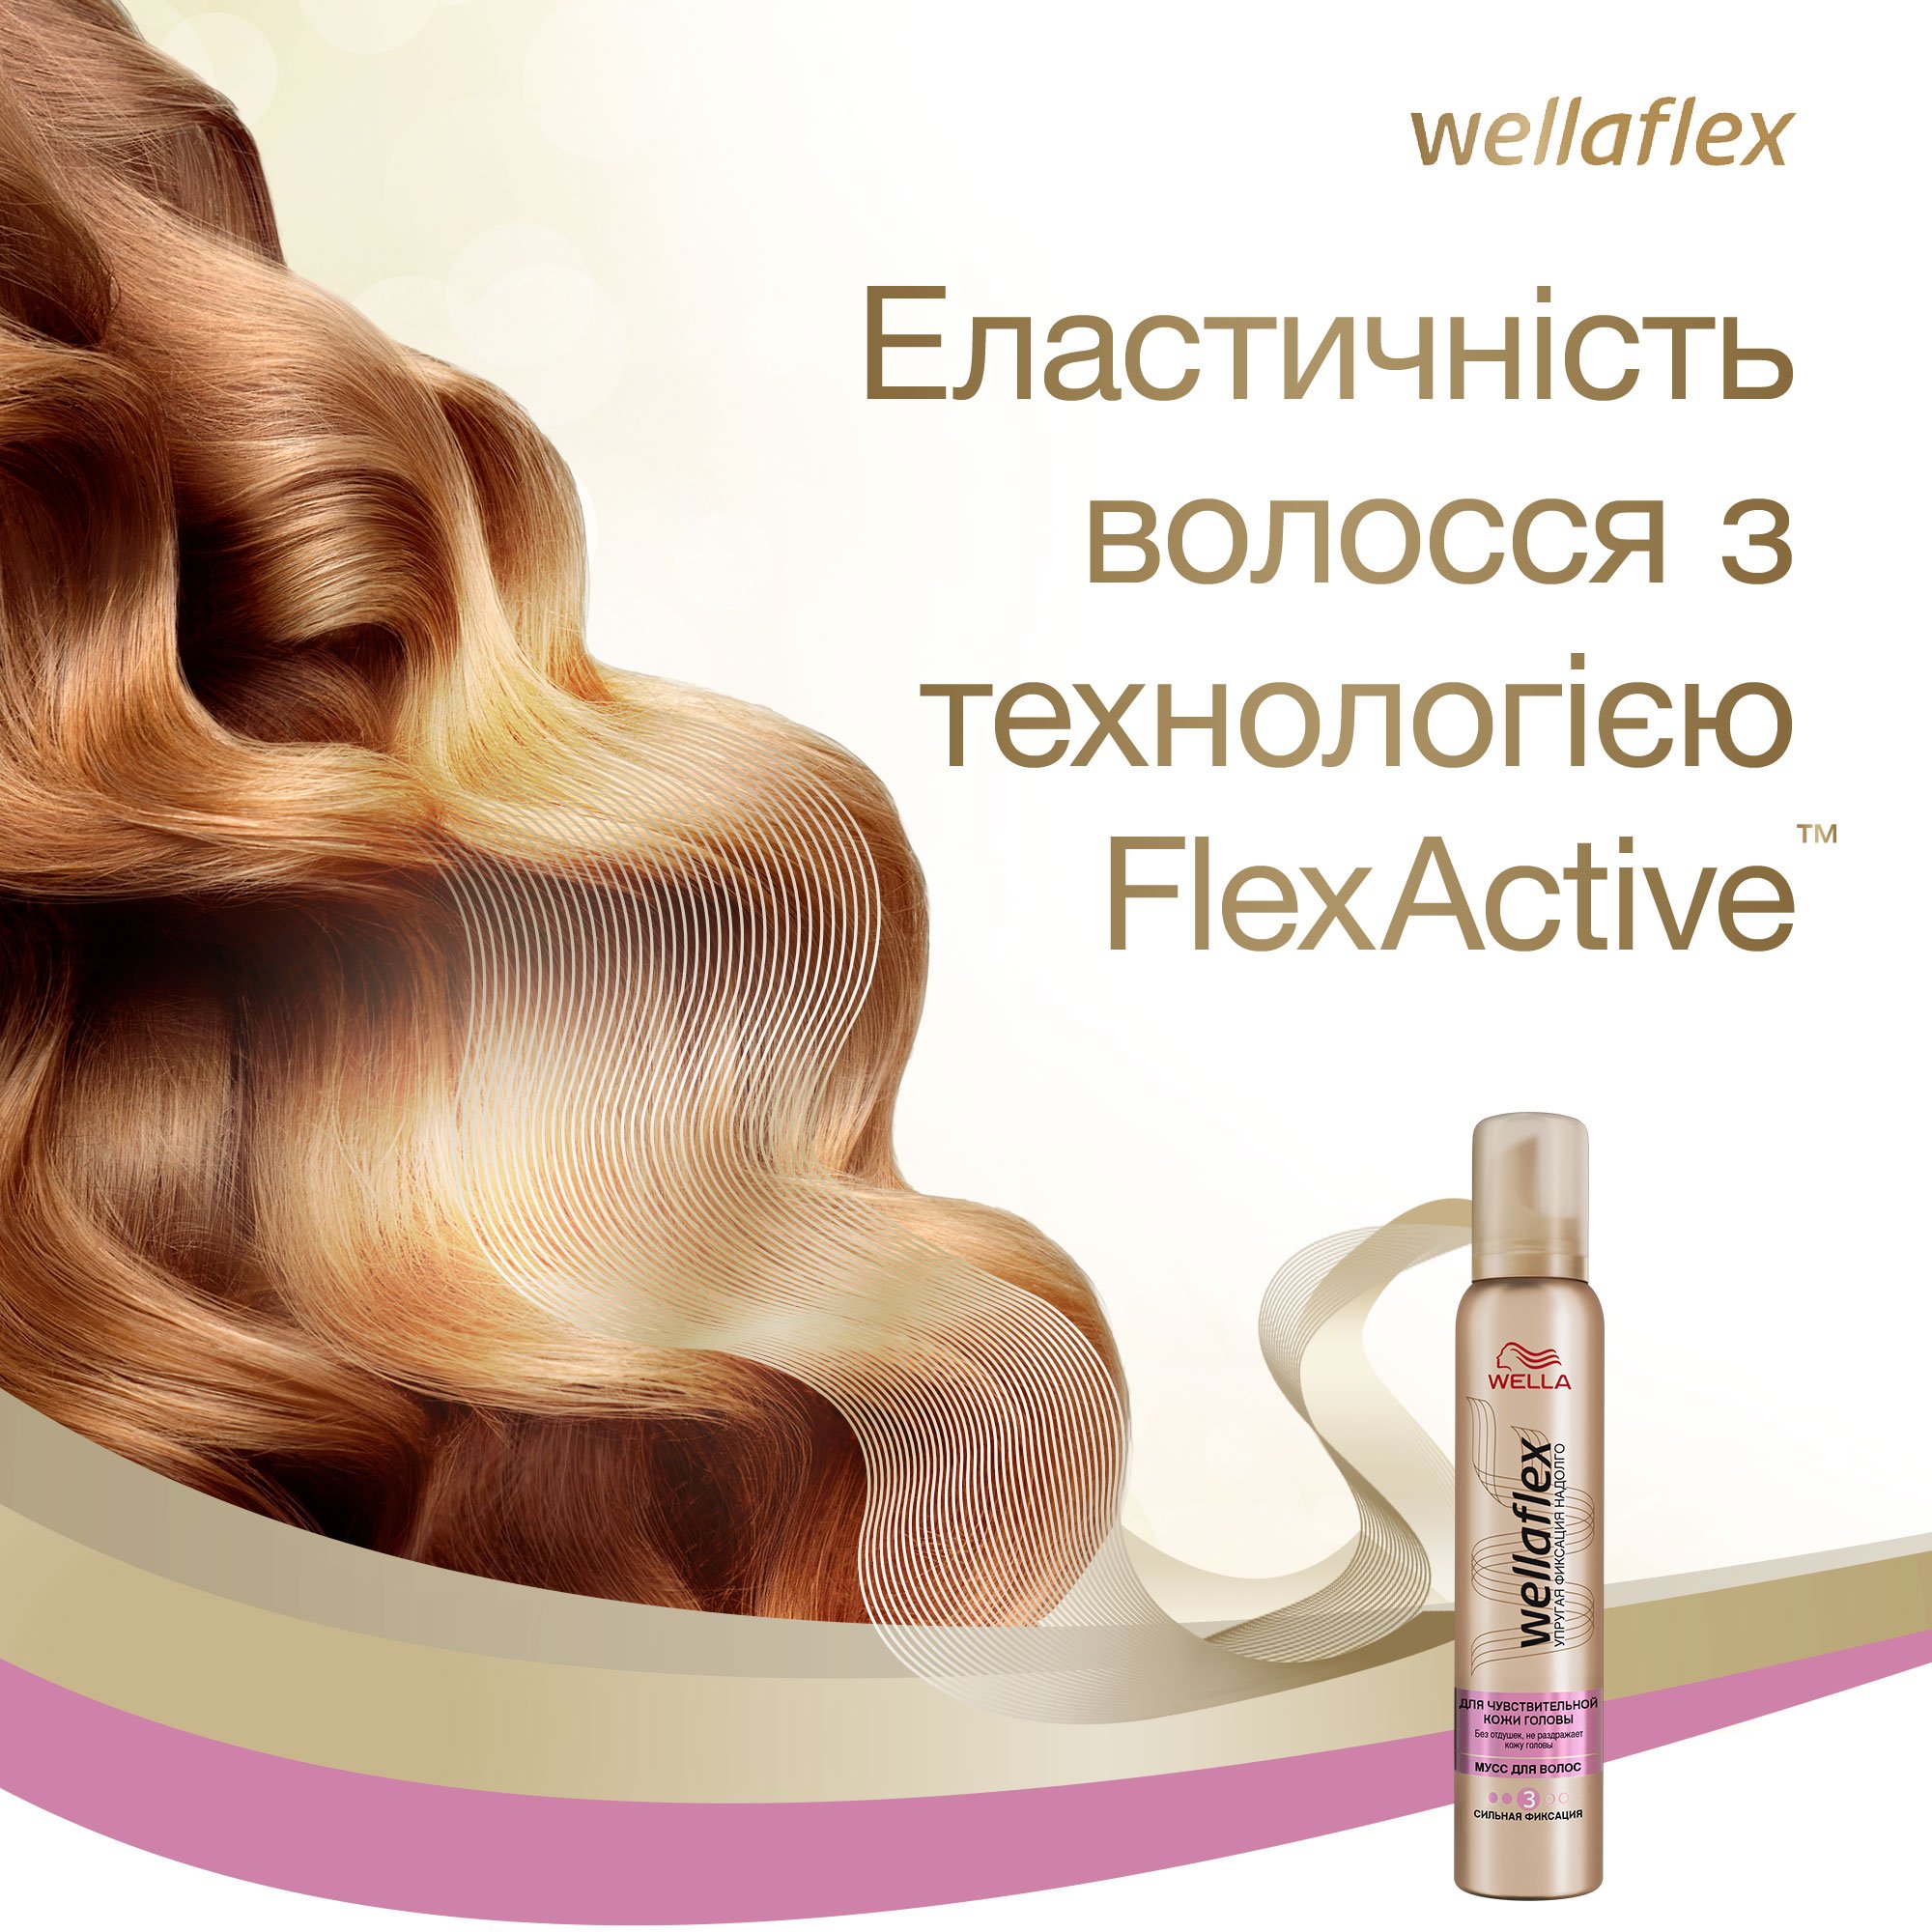 Мусс для волос Wellaflex для чувствительной кожи головы Сильной фиксации, 200 мл - фото 5